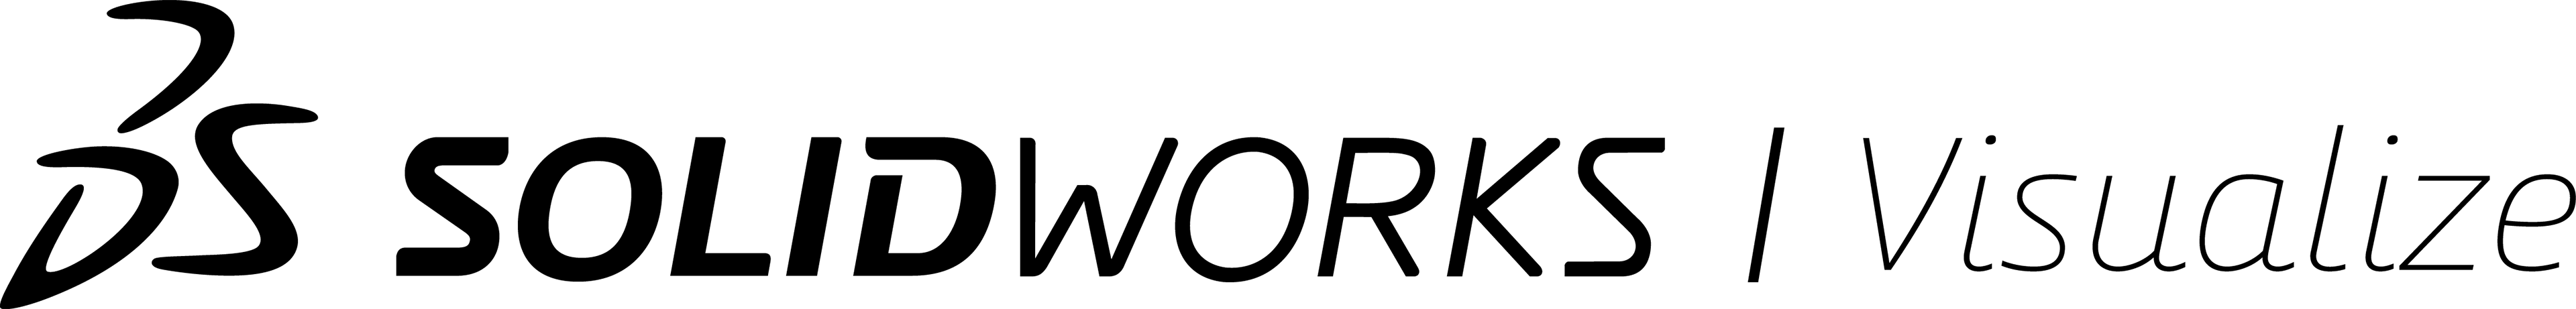 Solidworks - Black Solidworks Logo (3840x461)